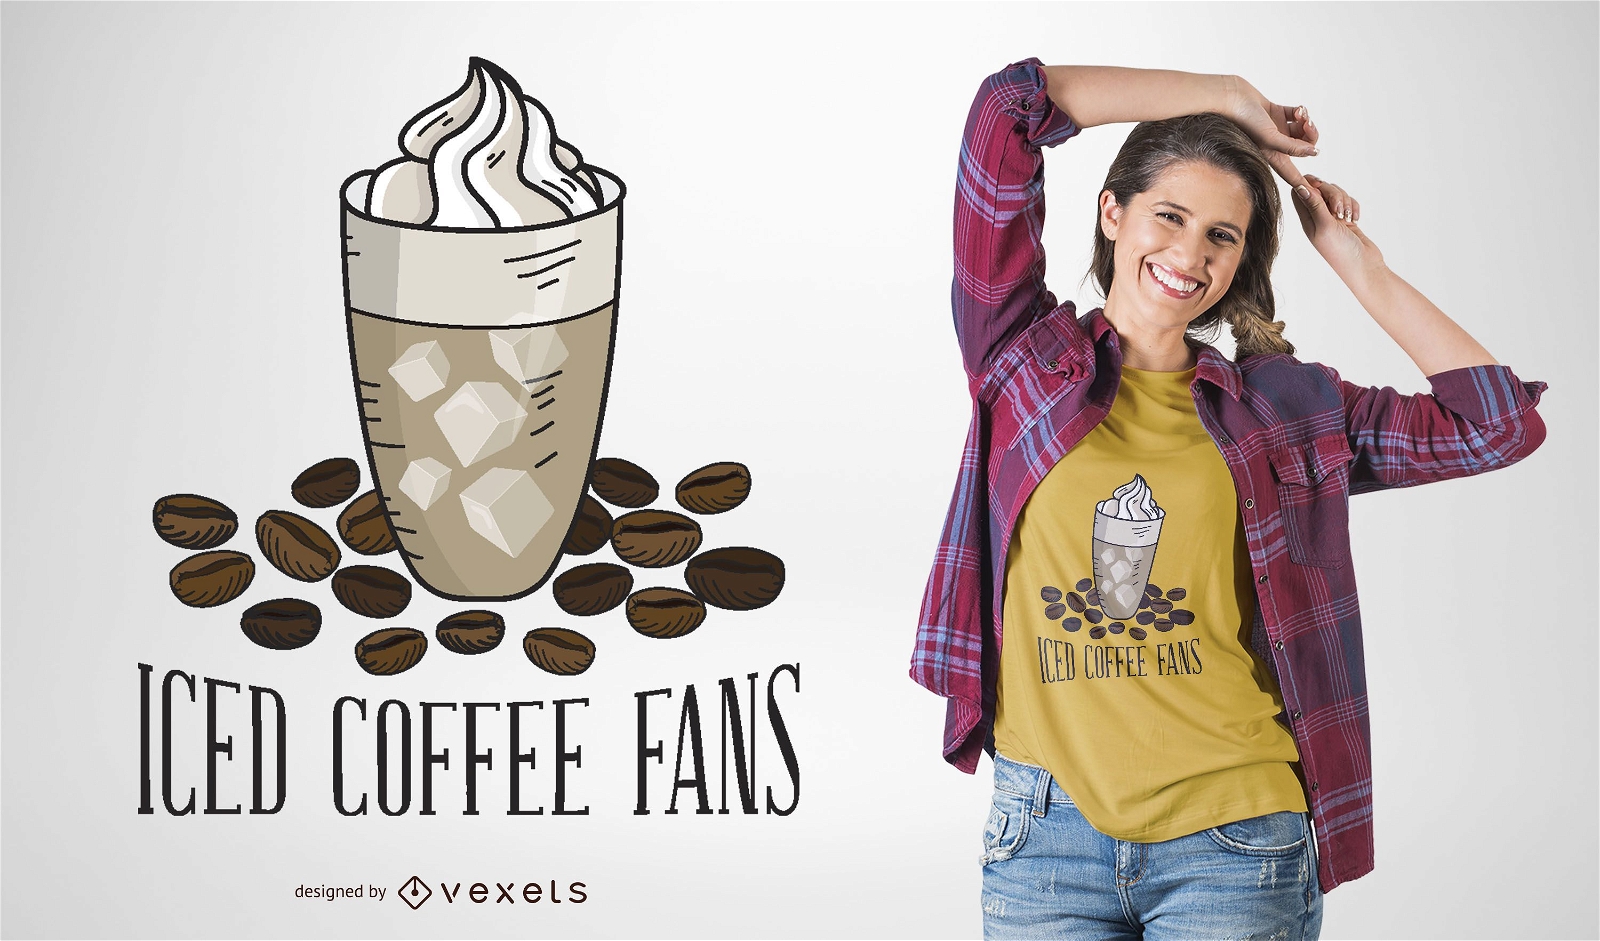 Dise?o de camiseta de fan?ticos del caf? helado.